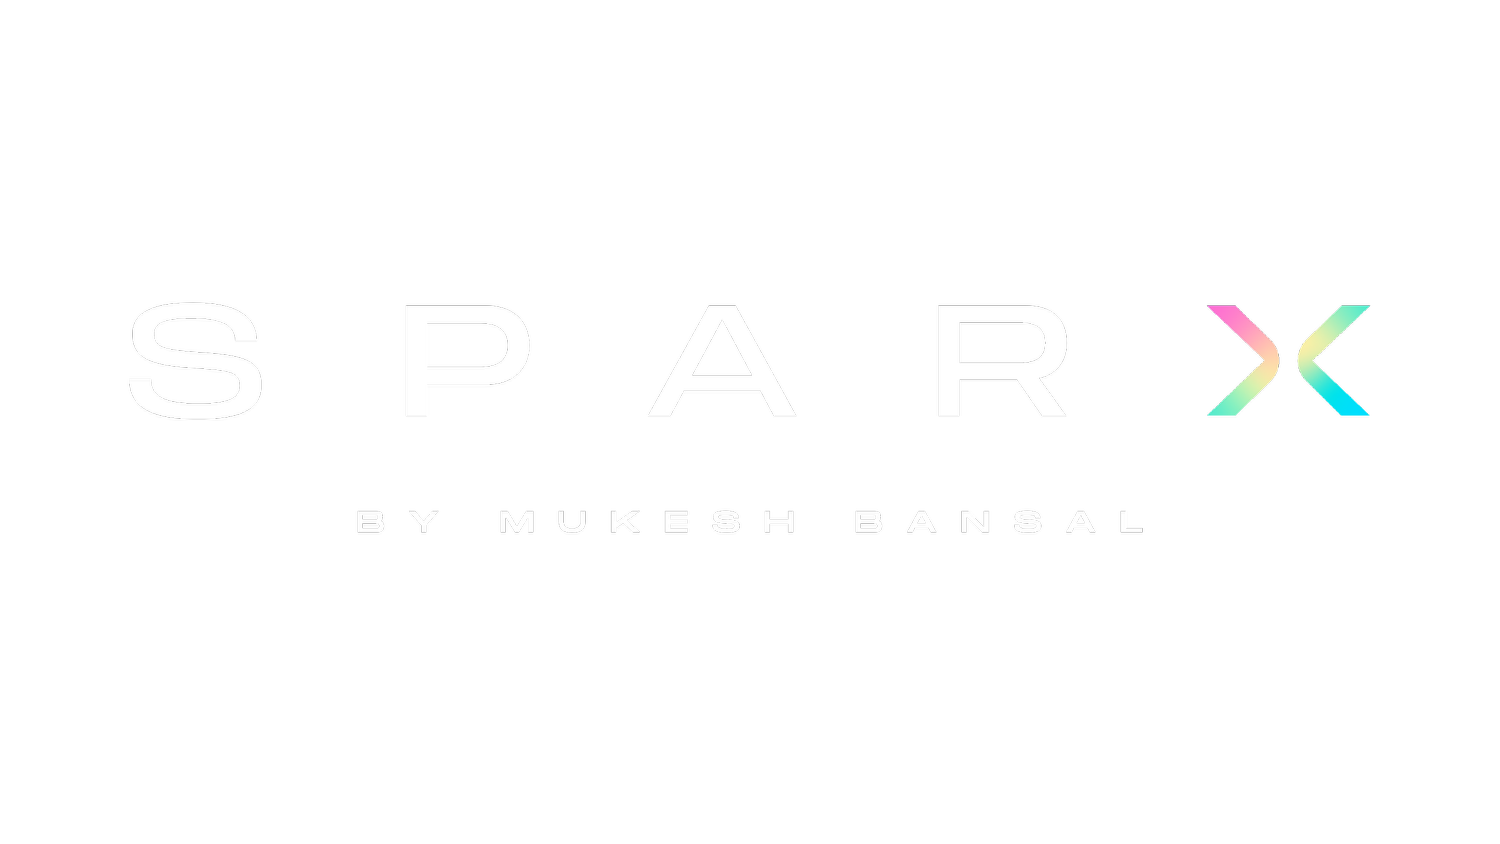 Sparx by Mukesh Bansal